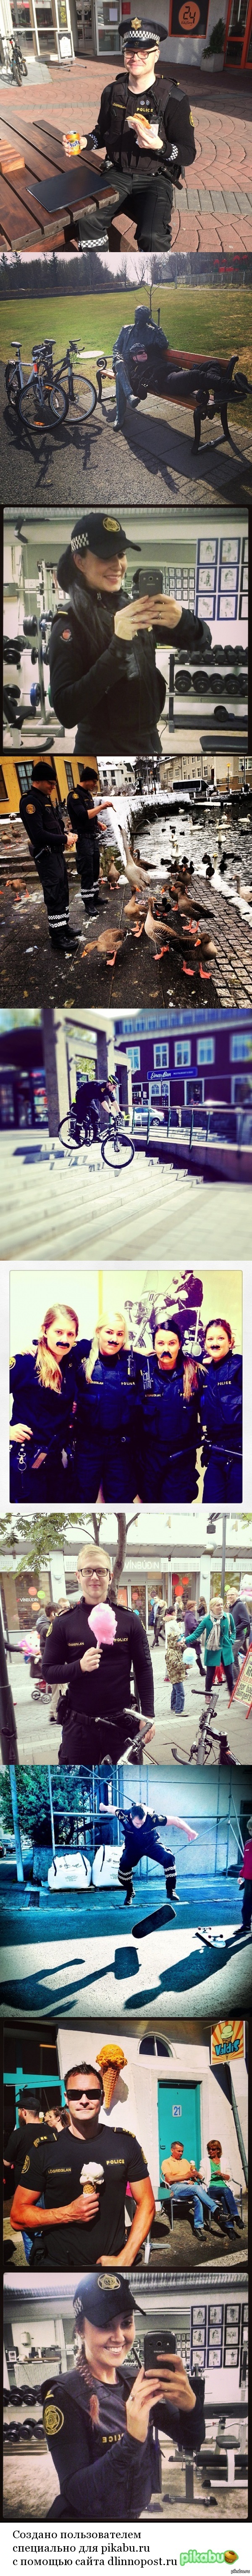 Официальный инстаграм исландской полиции.   Фото, длиннопост, инстаграм, полиция